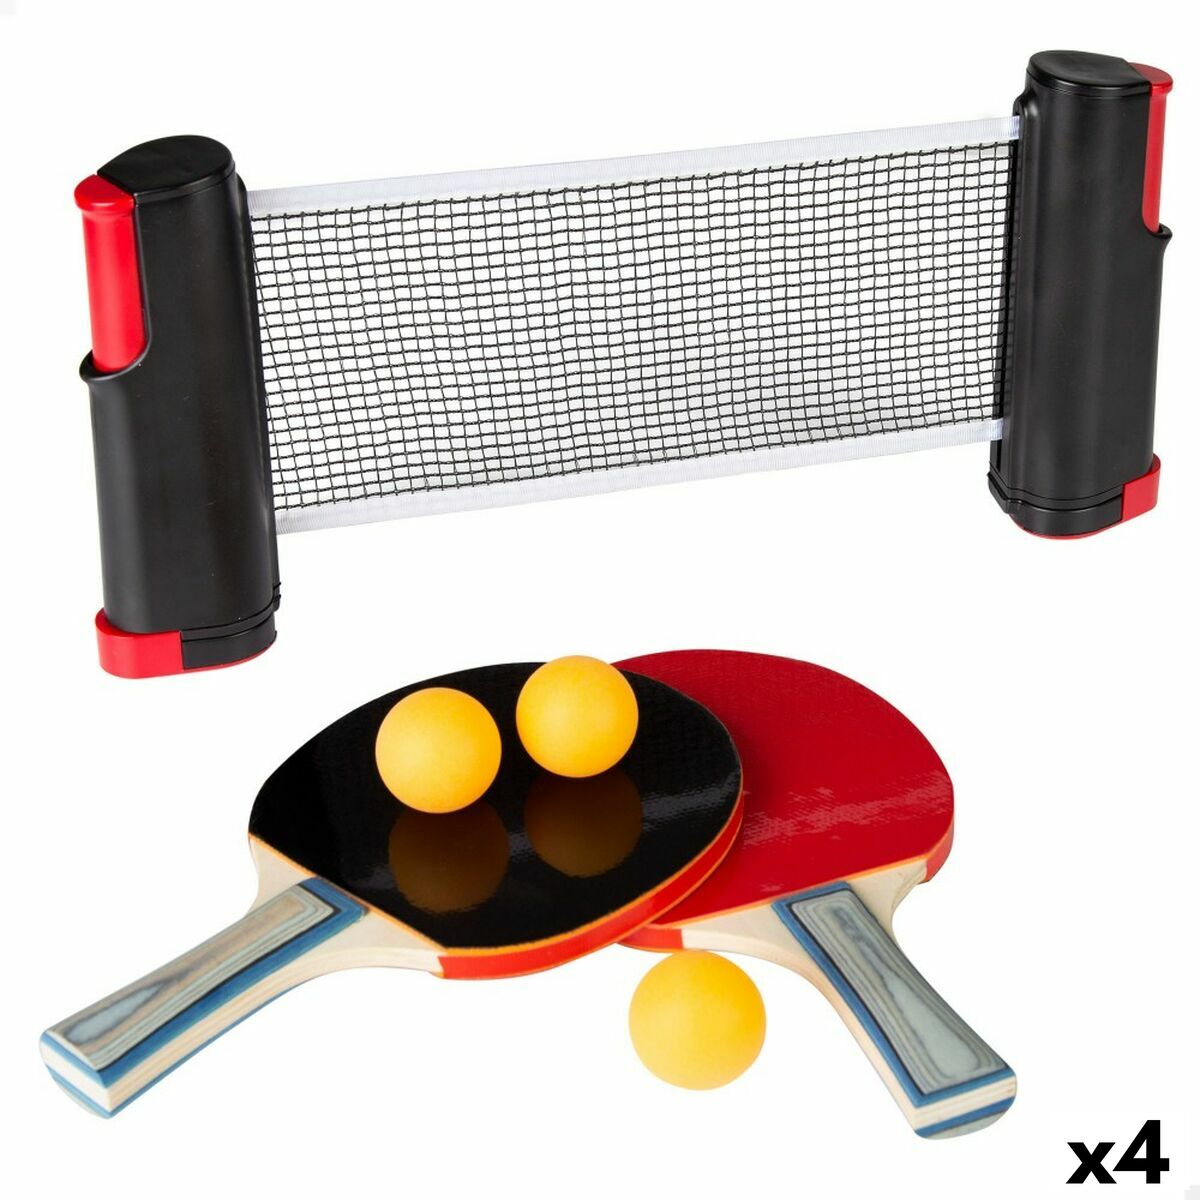 Mesas de ping pong plegables desde 135 €?